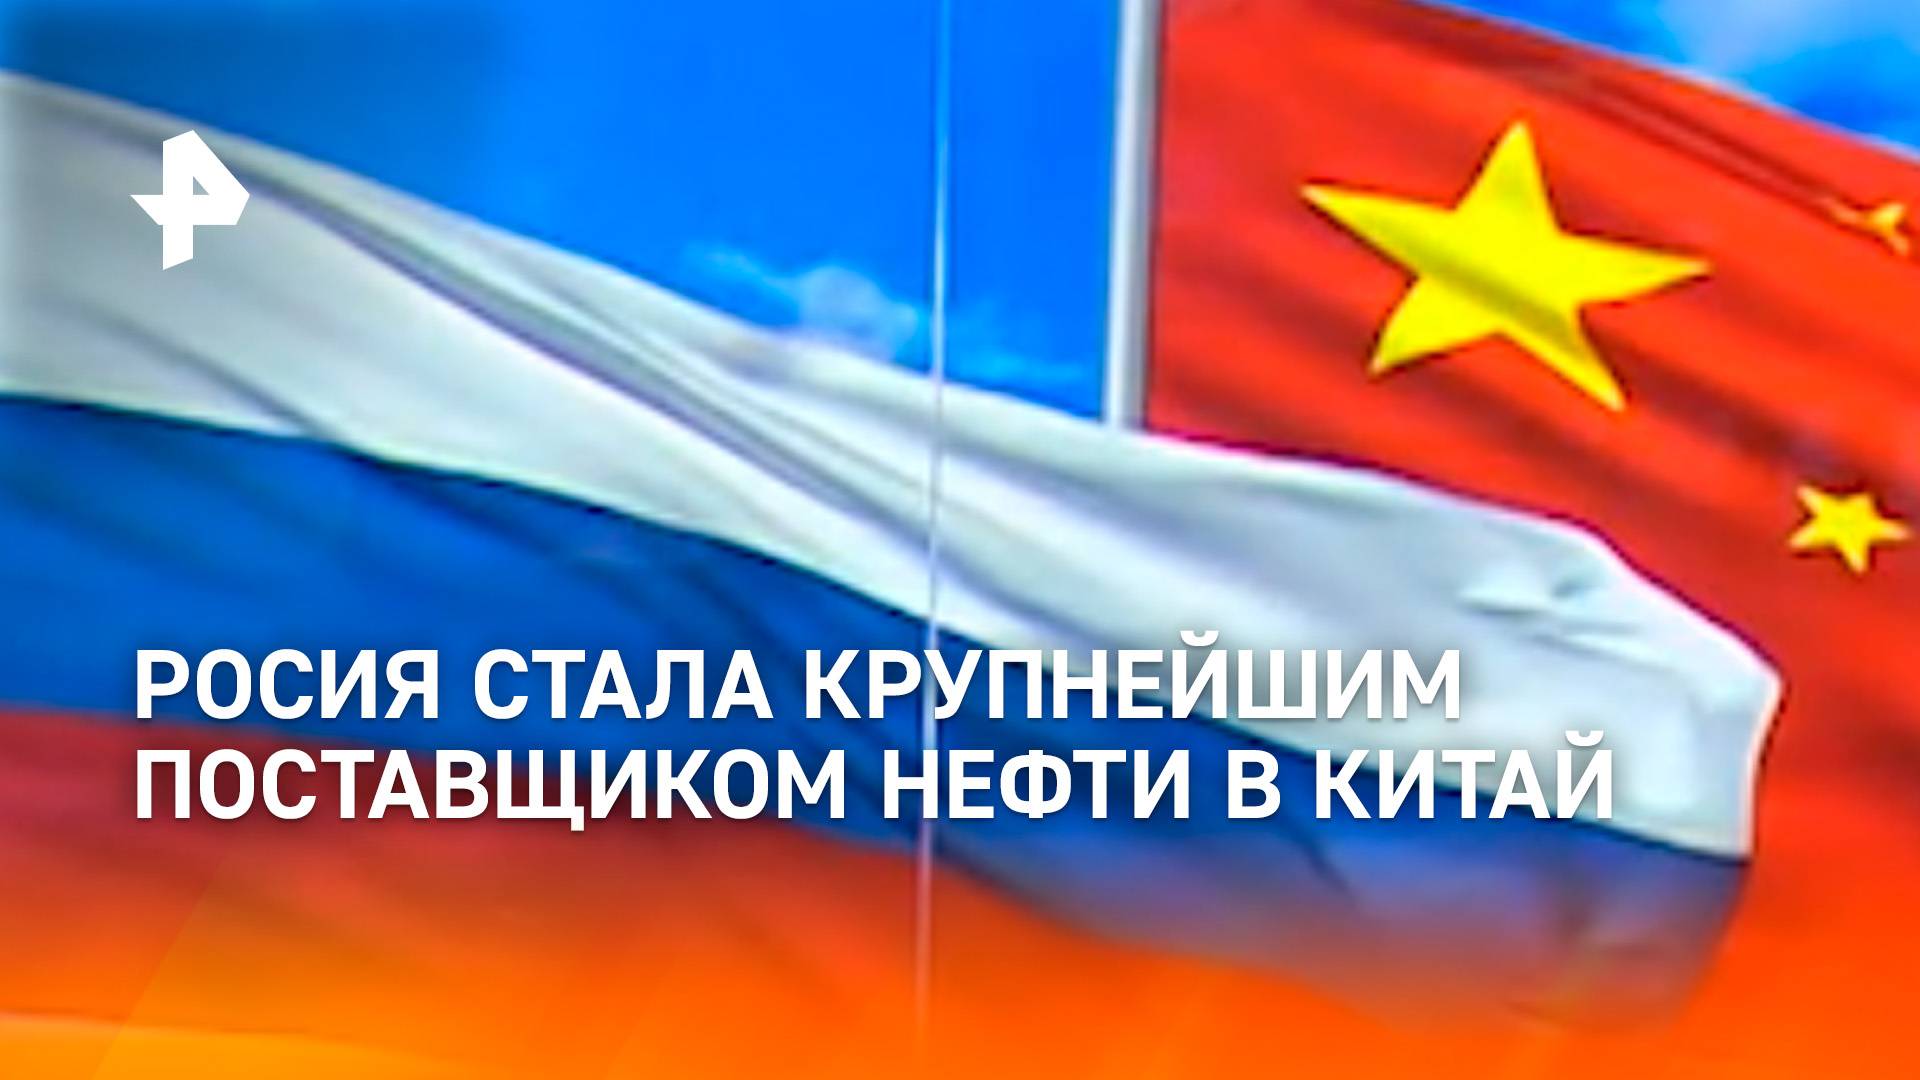 В Москве состоялся VI российско-китайский энергетический бизнес-форум